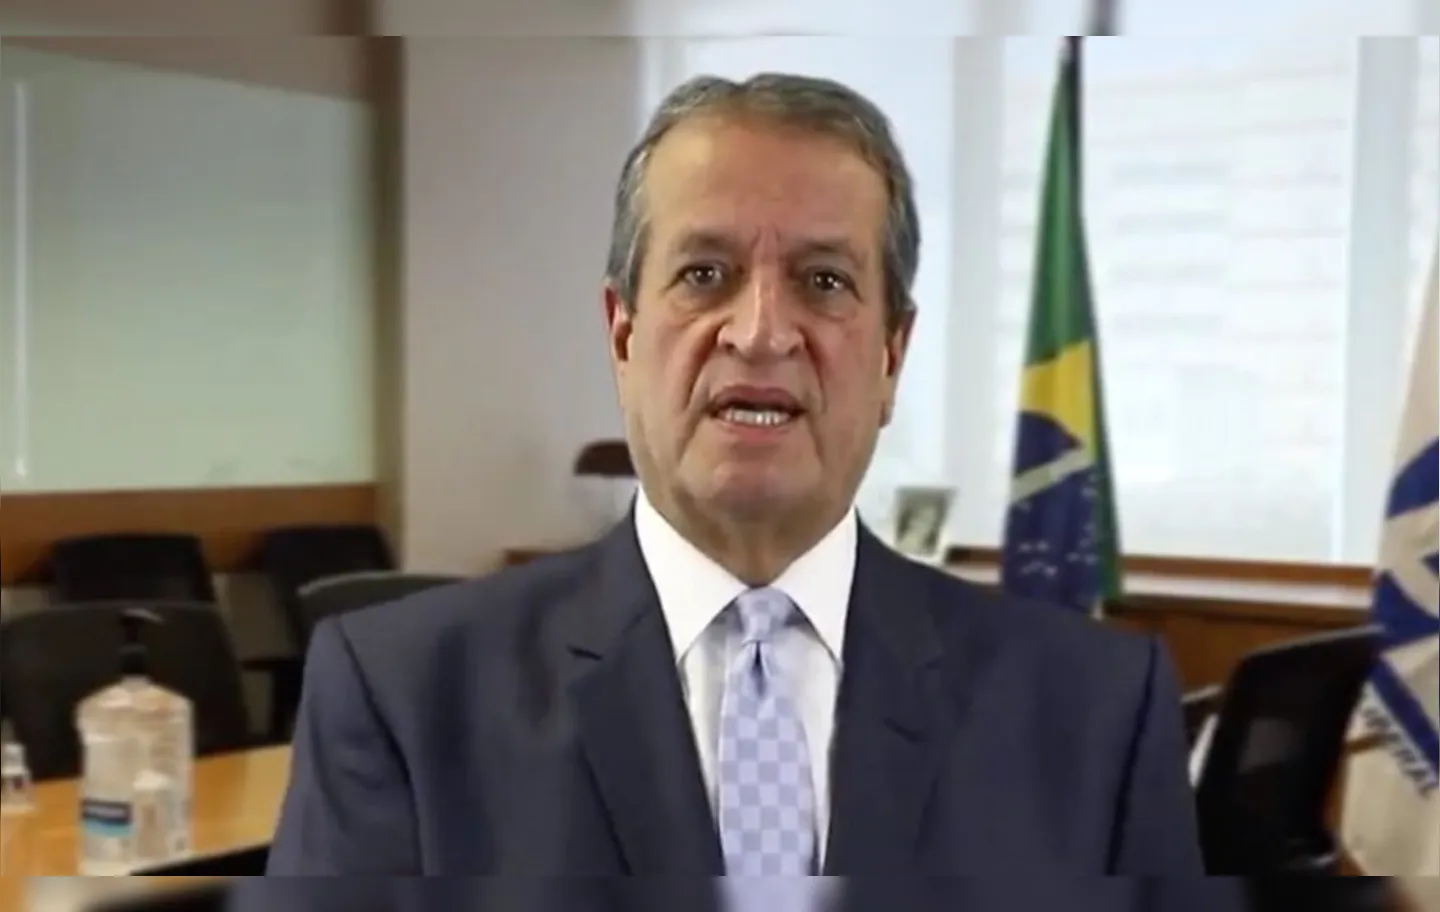 "O próprio Bolsonaro foi eleito presidente do Brasil, com mais 53 deputados federais. Como reclamar da urna eletrônica?", questiona o president nacional do PL